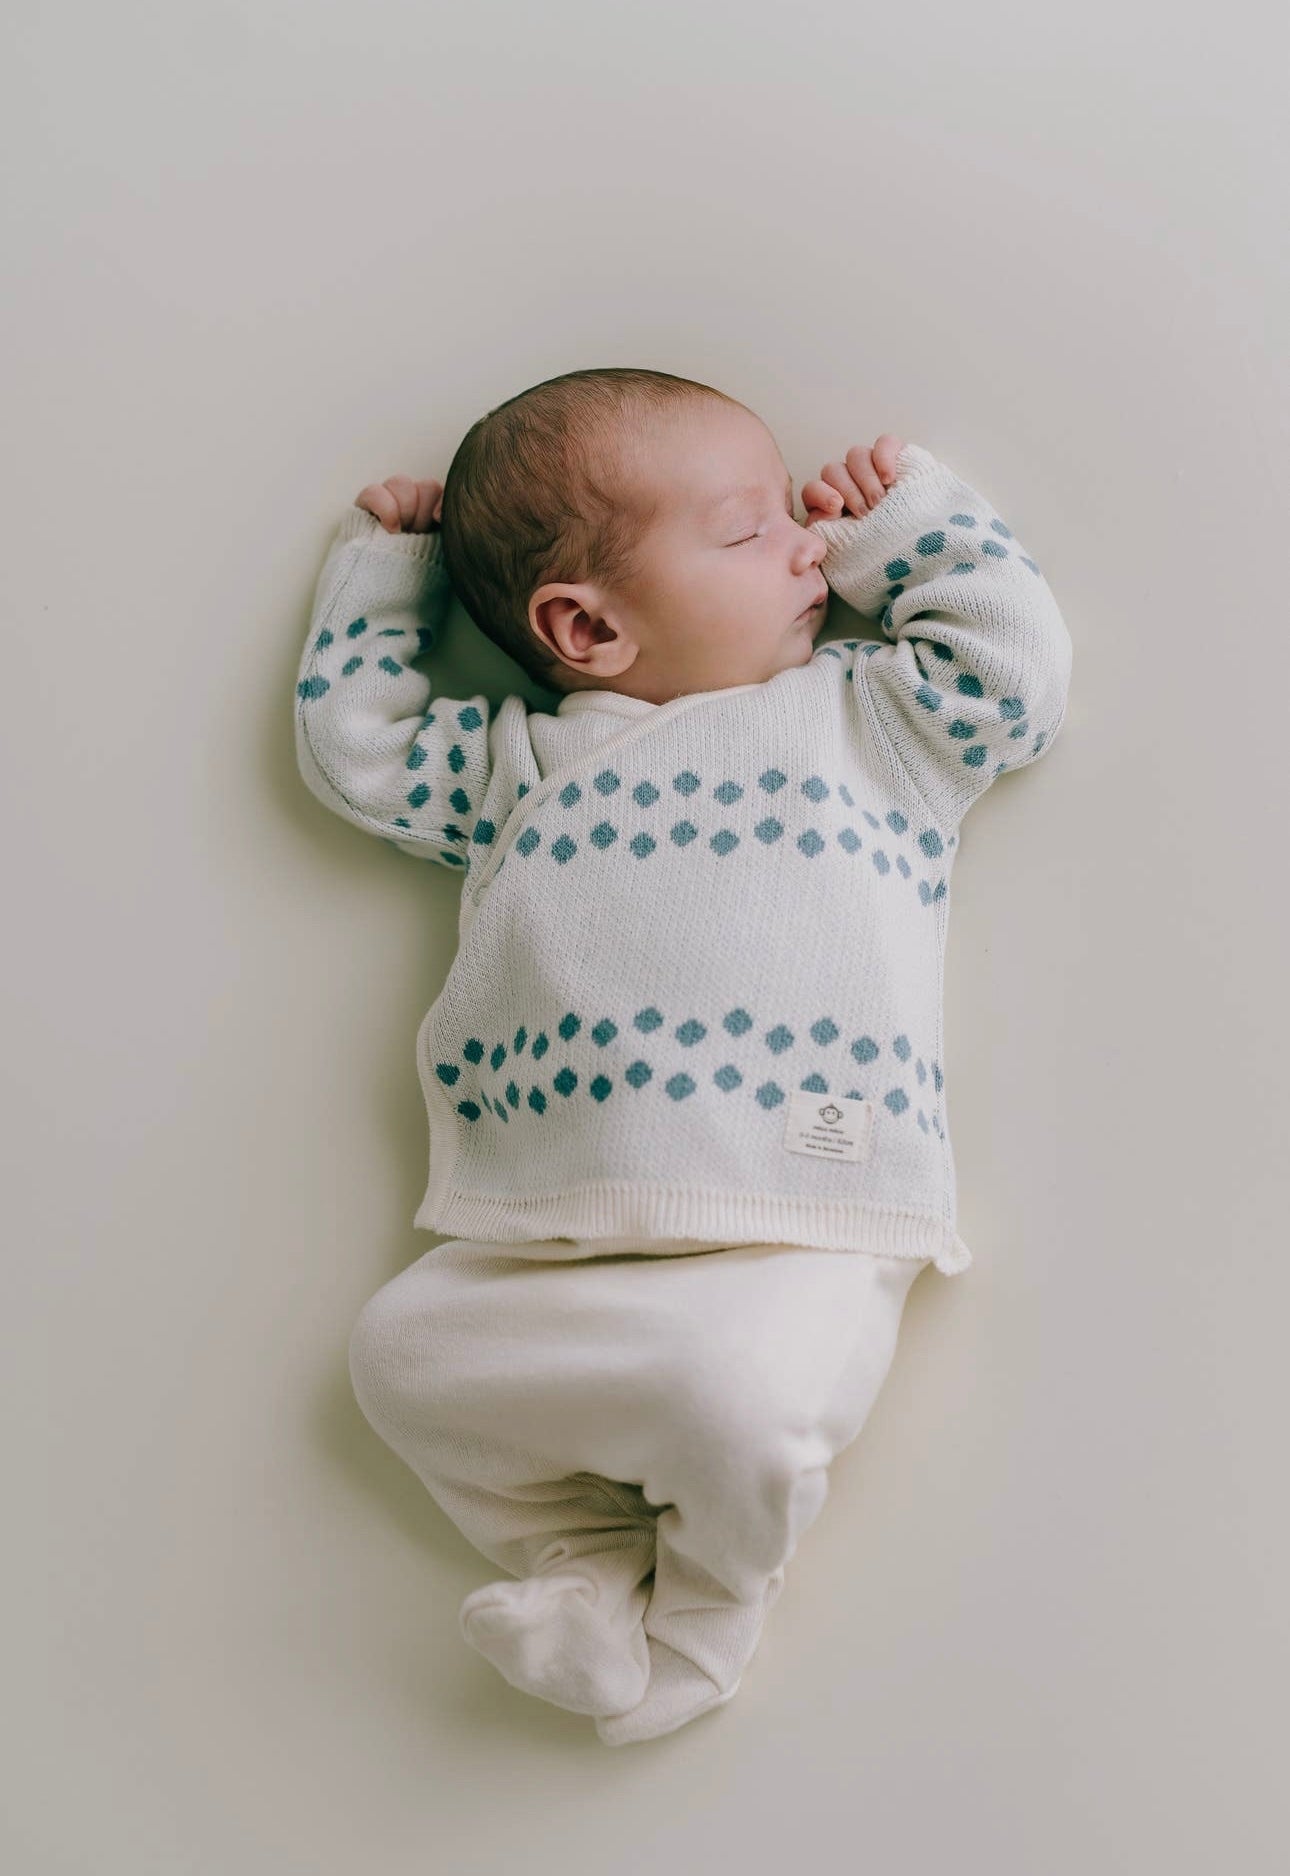 Ein Neugeborenes schläft friedlich auf einem hellen Hintergrund. Es trägt einen weißen Pullover mit blauen Punkten und dazu passende Hosen von Pack Dots Jeans für Neugeborene, alles aus 100 % Bio-Baumwolle. Das Baby hat seine Hände in der Nähe seines Micu Micu ausgestreckt.